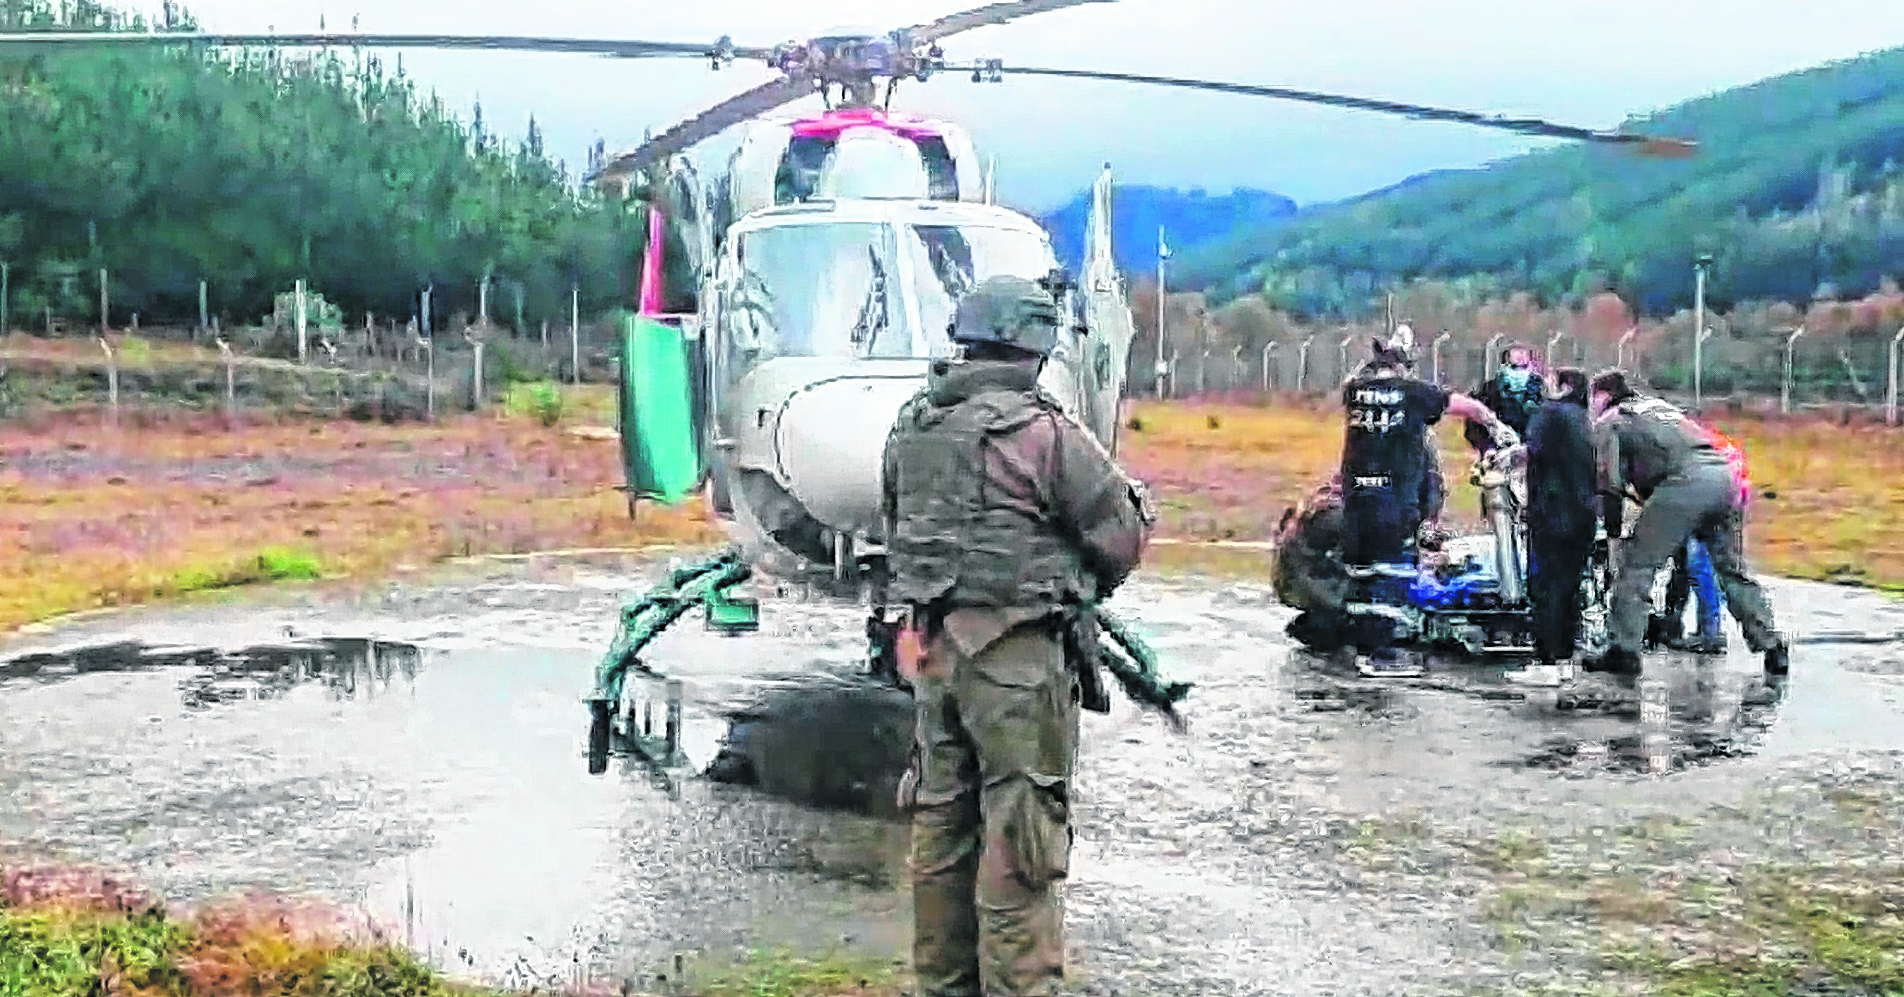 El operario herido fue llevado en helicóptero, pero murió en el hospital